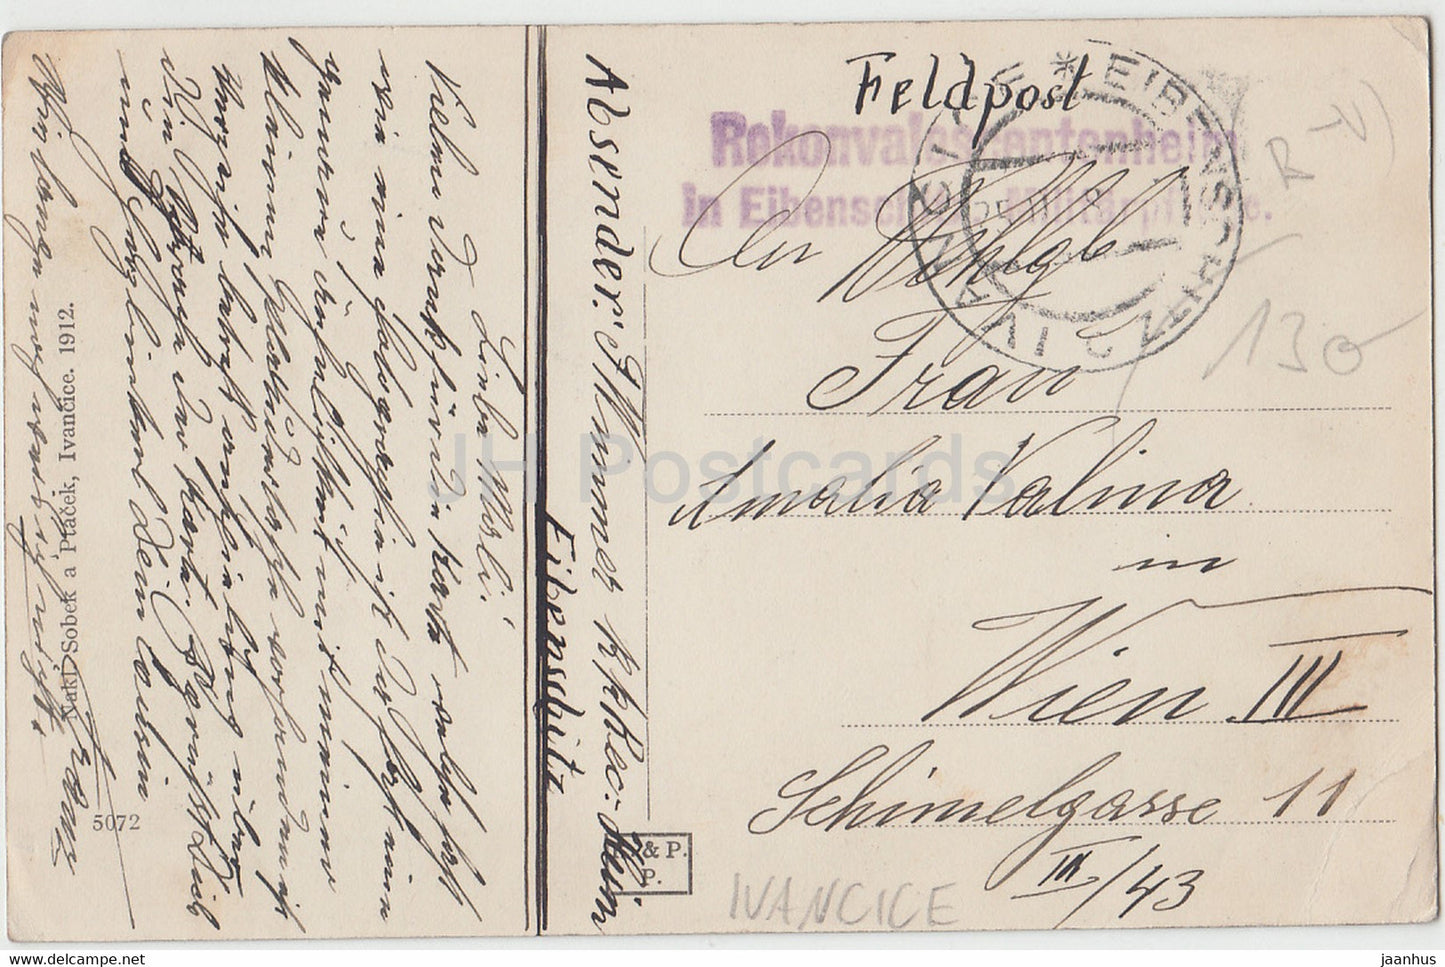 Partie u Ivancic - Ivancice - Feldpost - alte Postkarte - 1912 - Tschechien - gebraucht